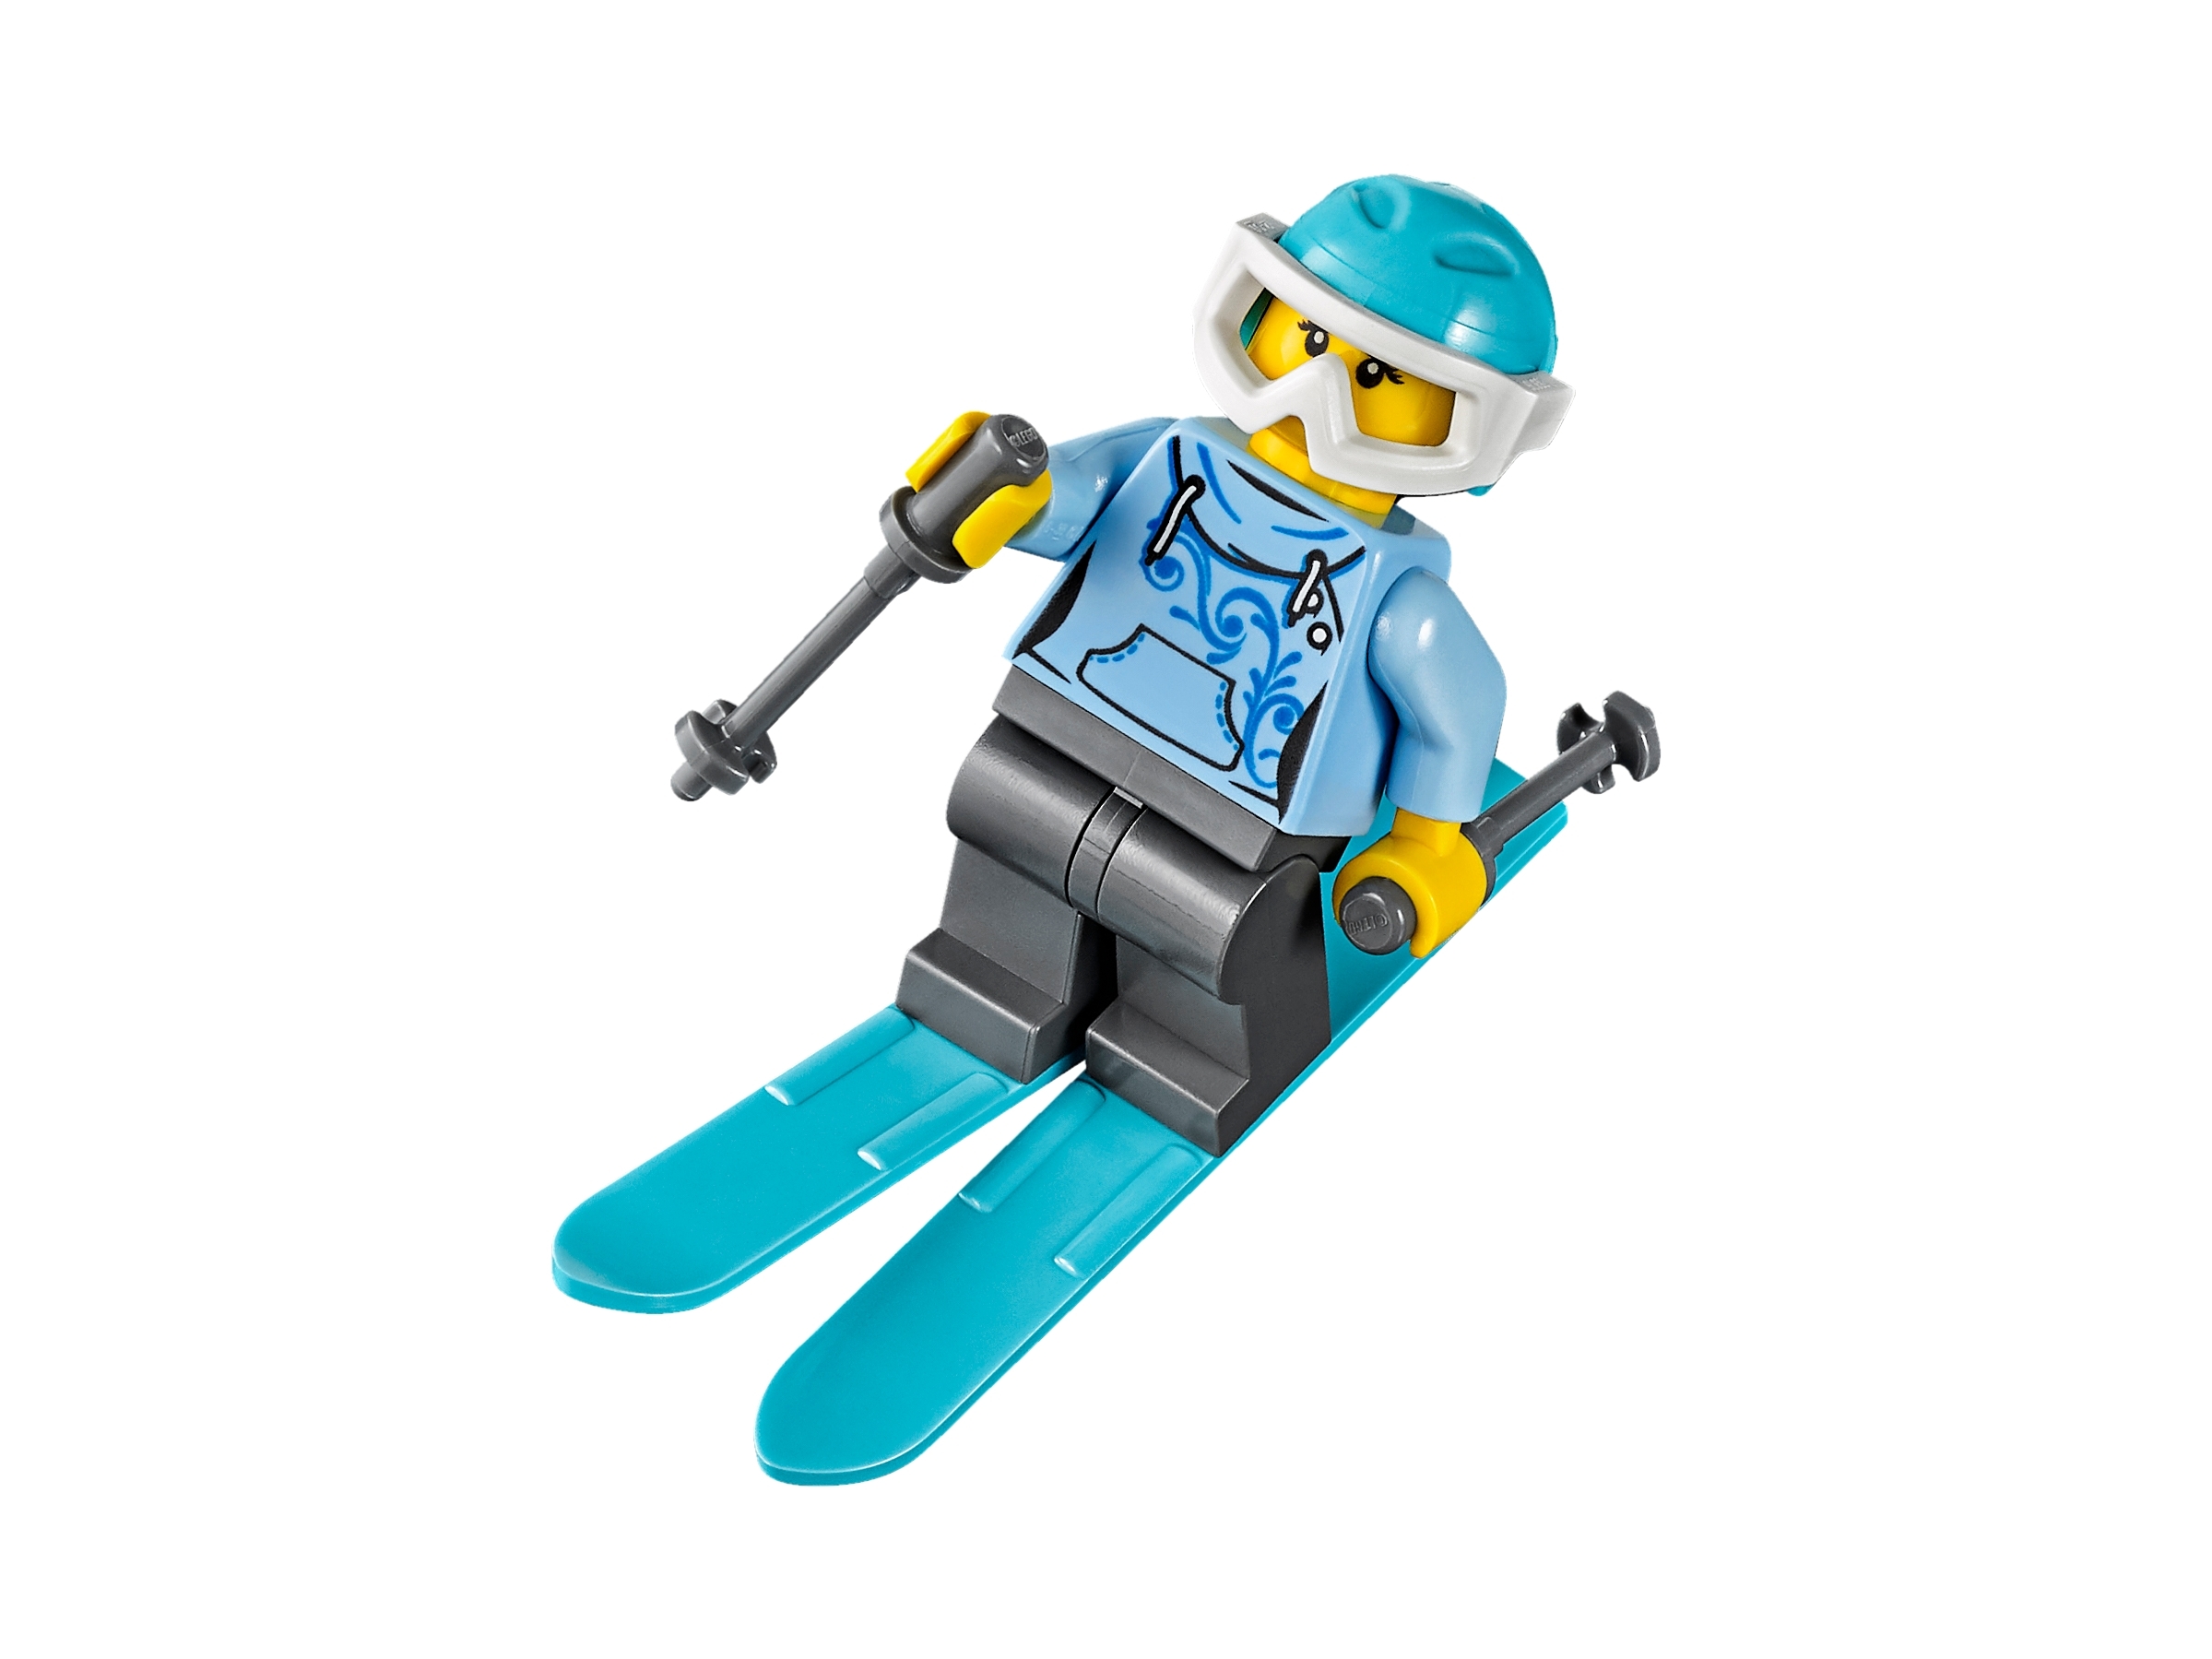 Række ud glemme spild væk Ski Resort 60203 | City | Buy online at the Official LEGO® Shop US